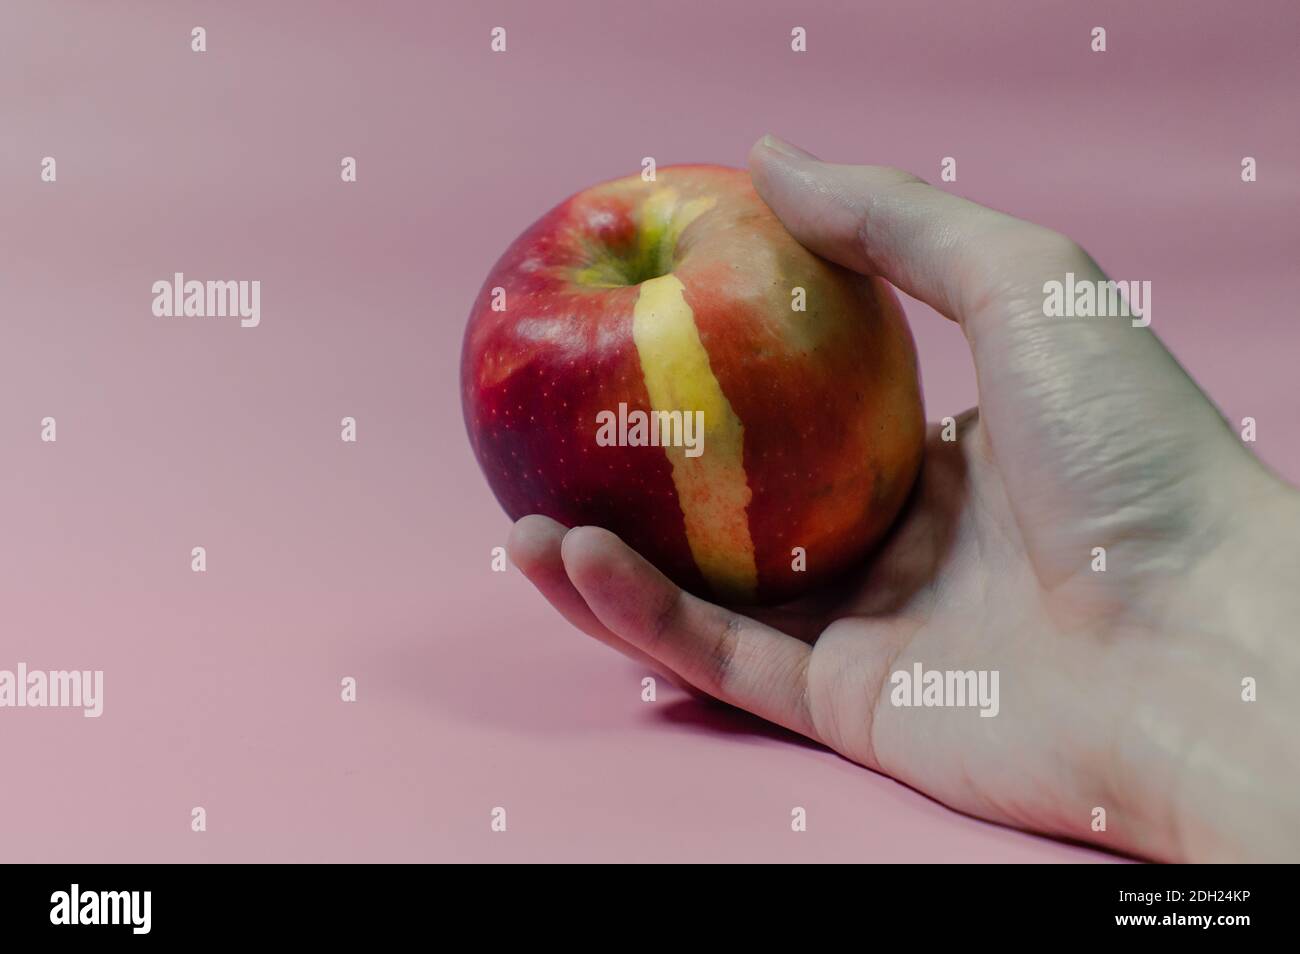 Una manzana roja envenenada en una mano caída Foto de stock